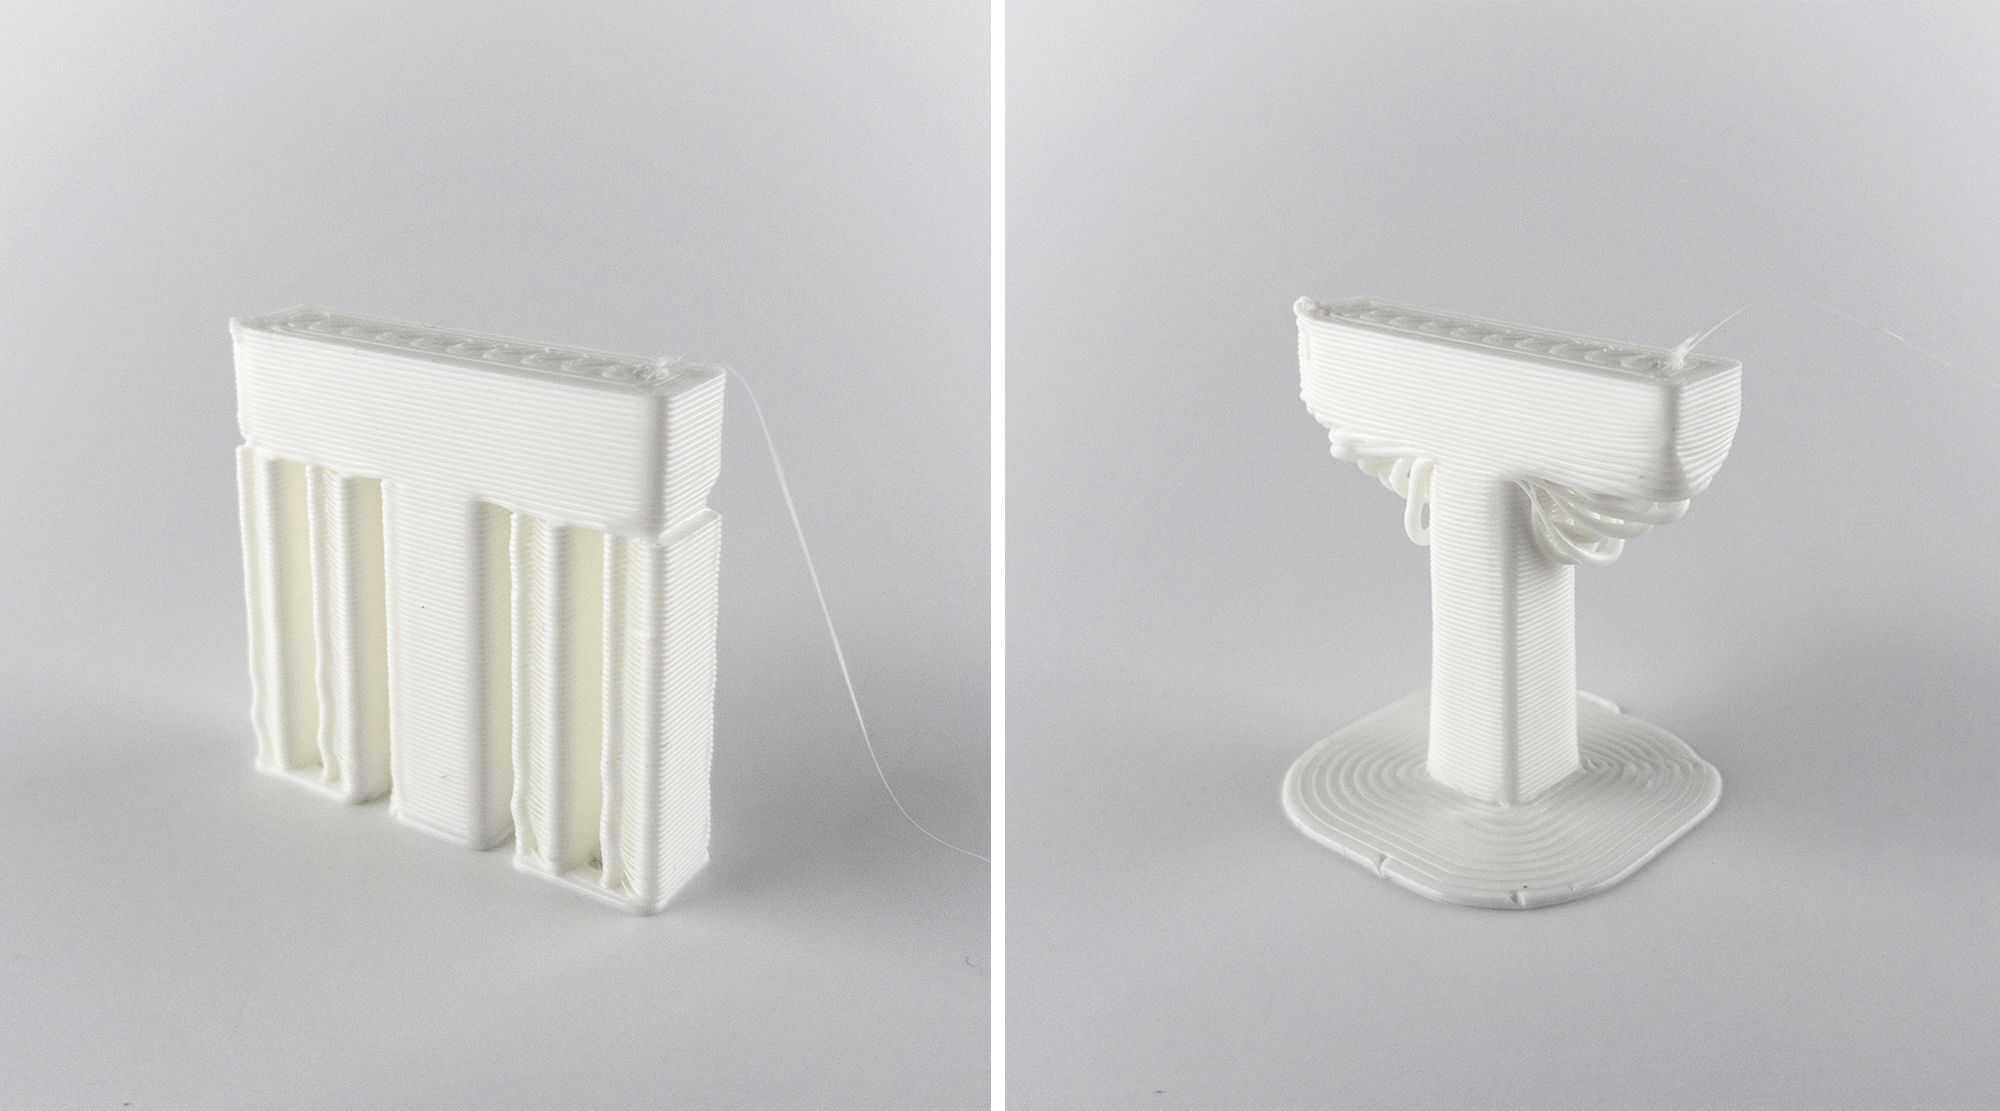 지지대 유무에 관계없이 3D 프린트된 두 개의 'T' 형 모델